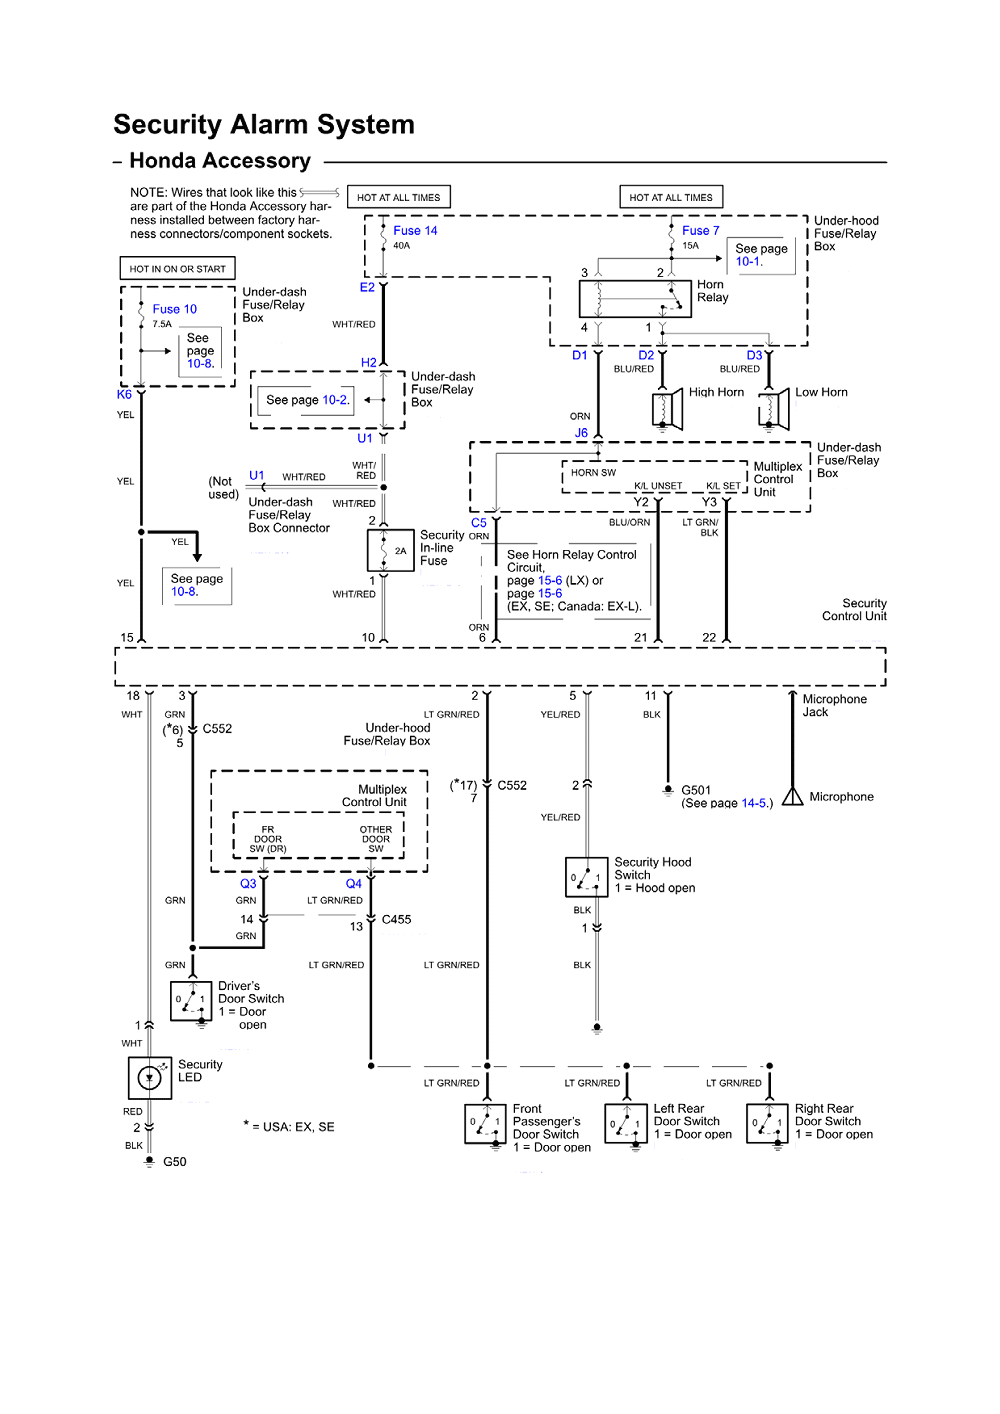 Yamaha Scooter Wiring Diagram Ga Gauge